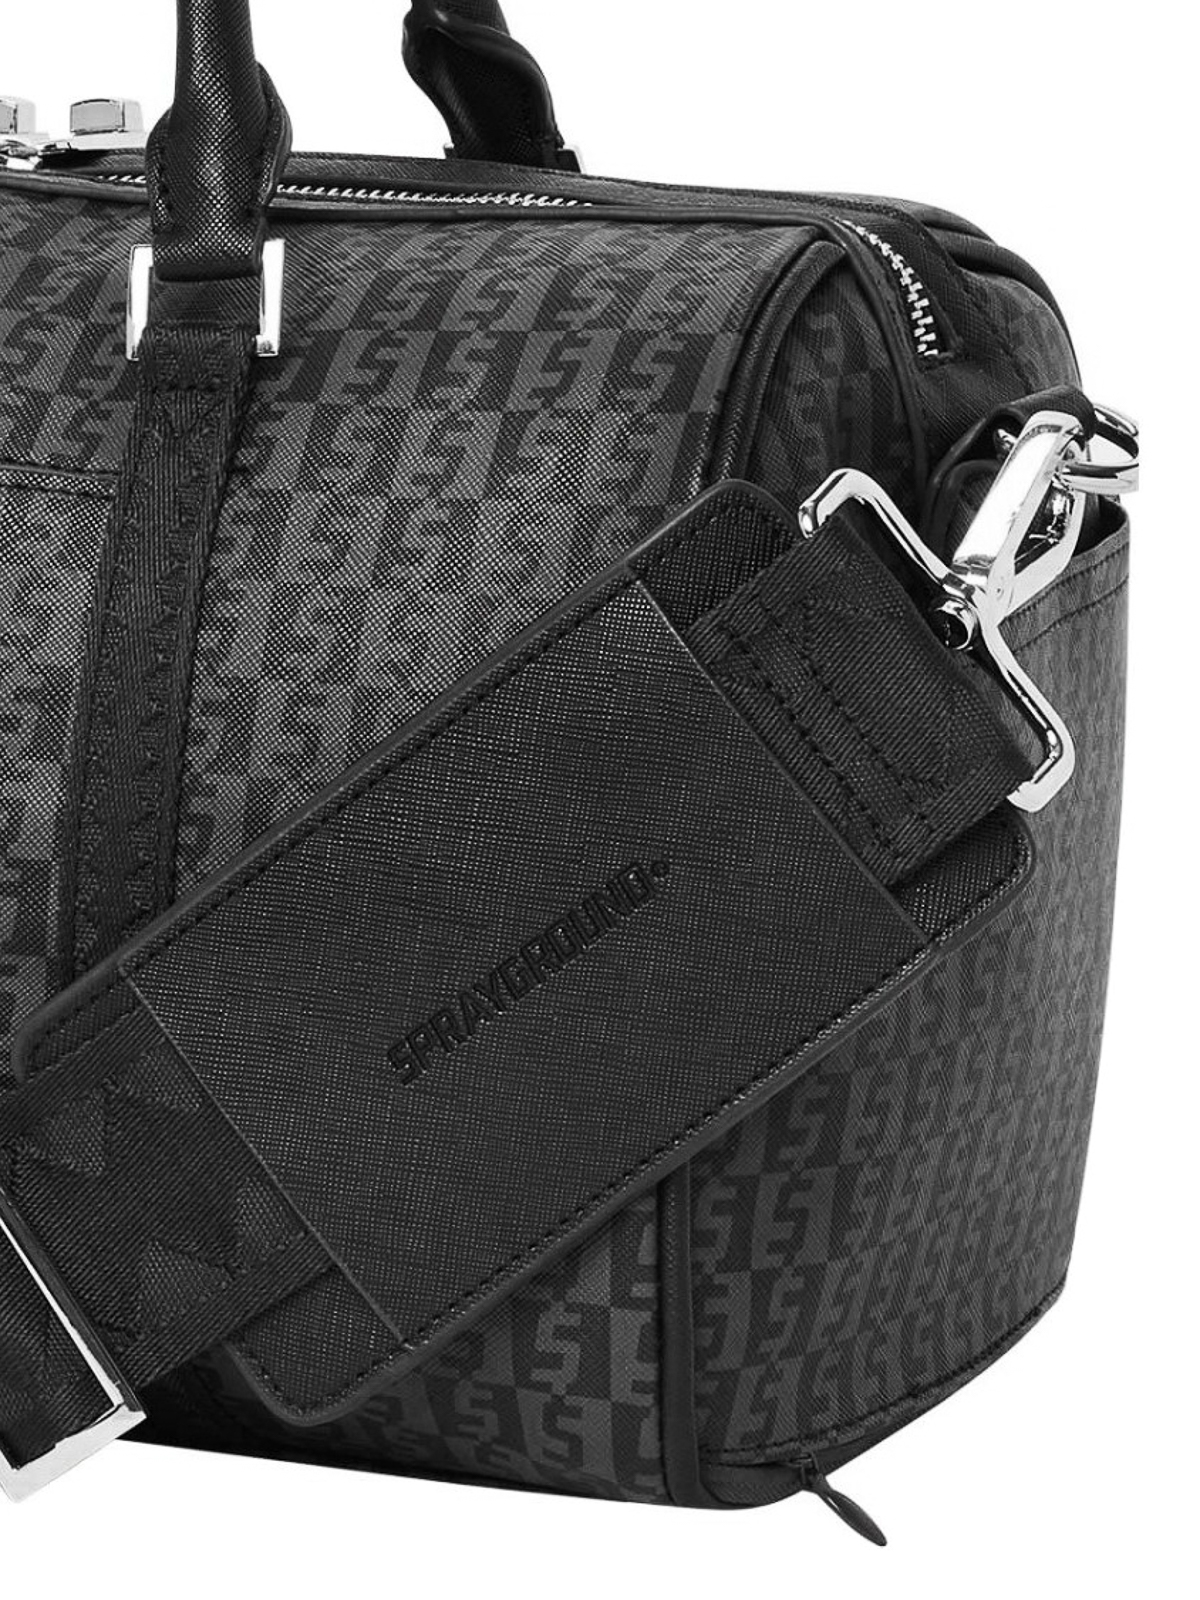 Sprayground Money Checkered Messenger Bag in Black